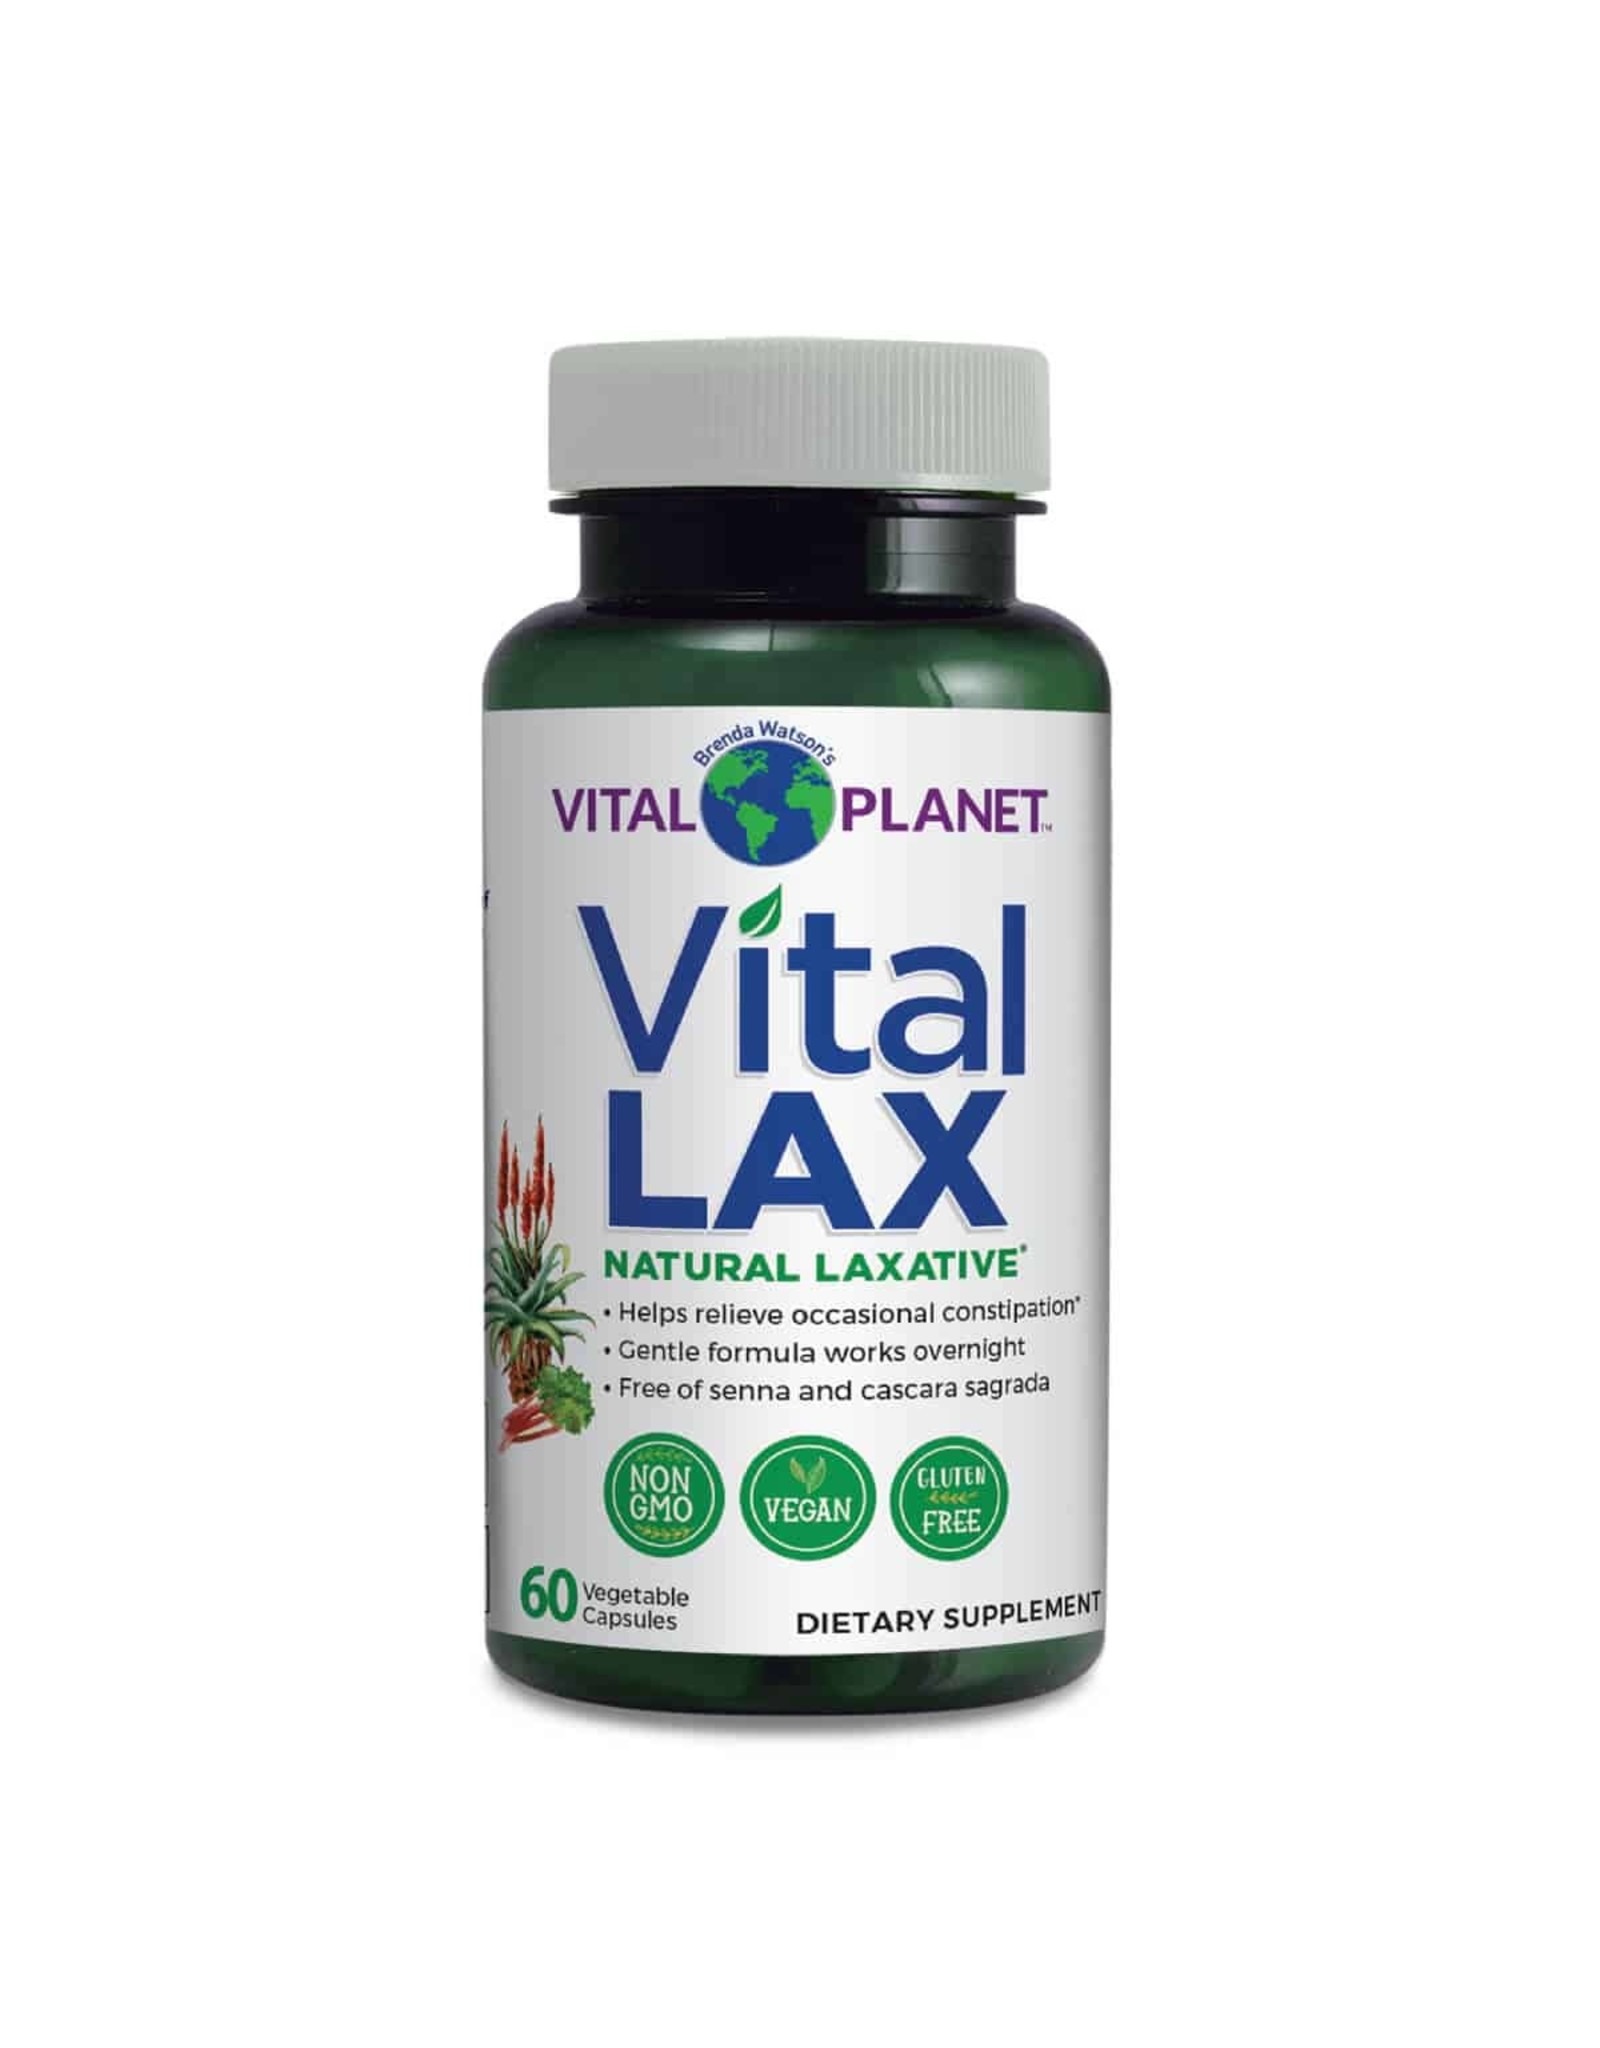 X Vital Lax Natural Laxative